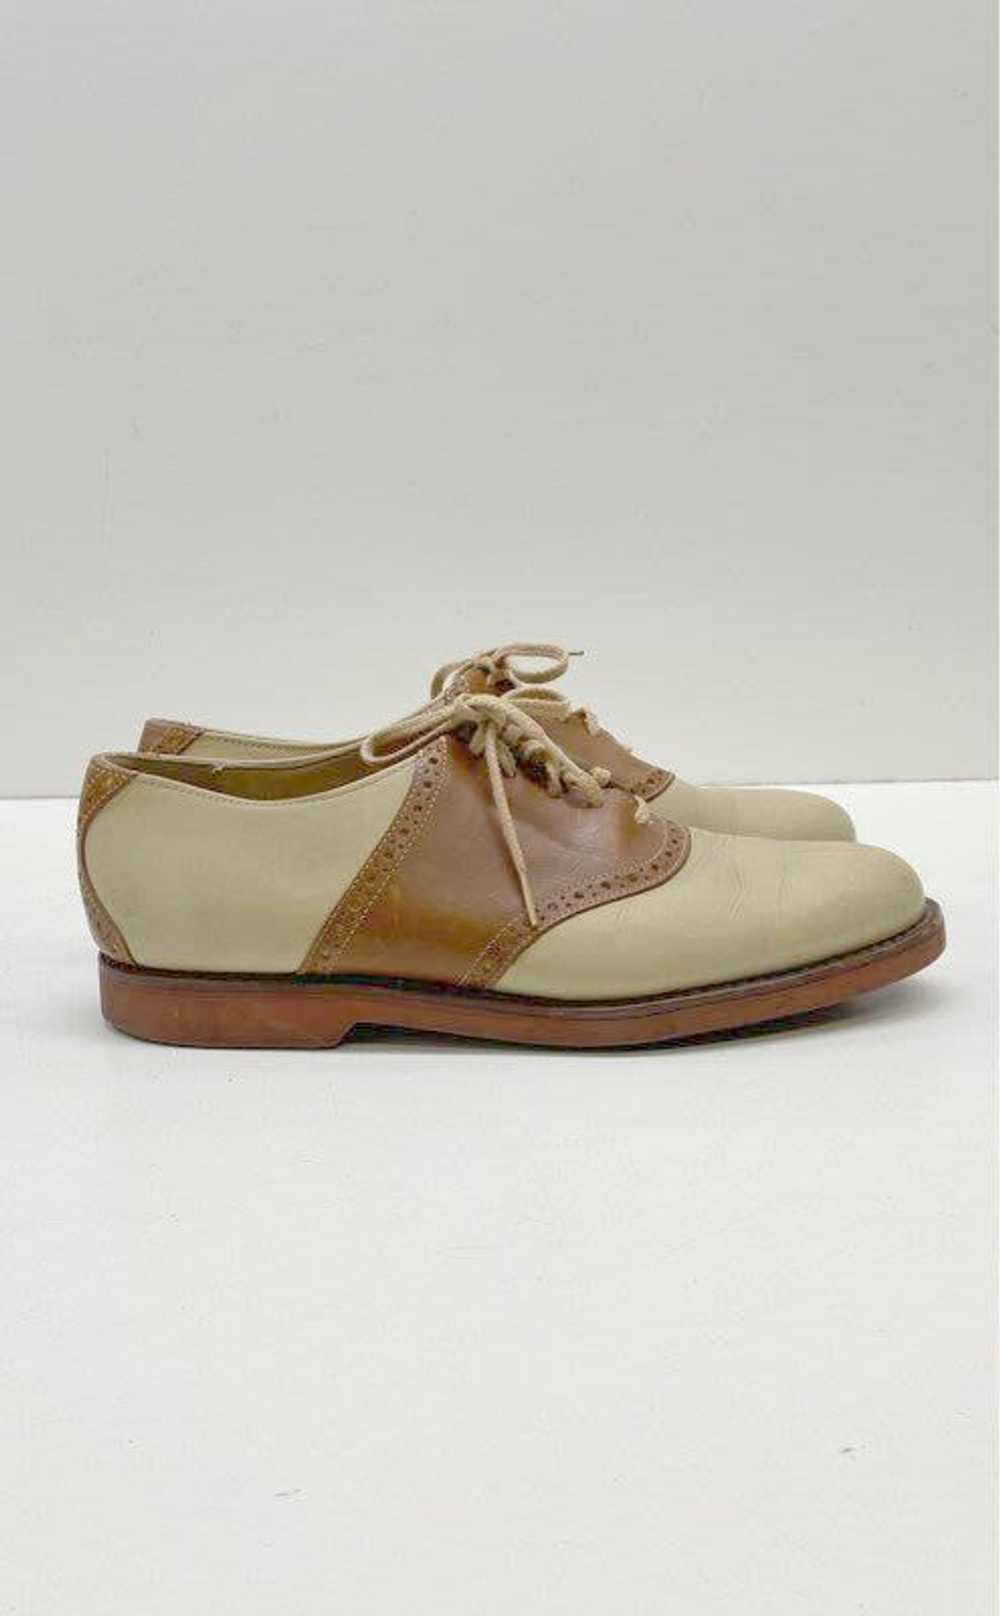 Cole Haan Men's Brown/Tan Saddle Shoes Sz. 8.5 - image 1